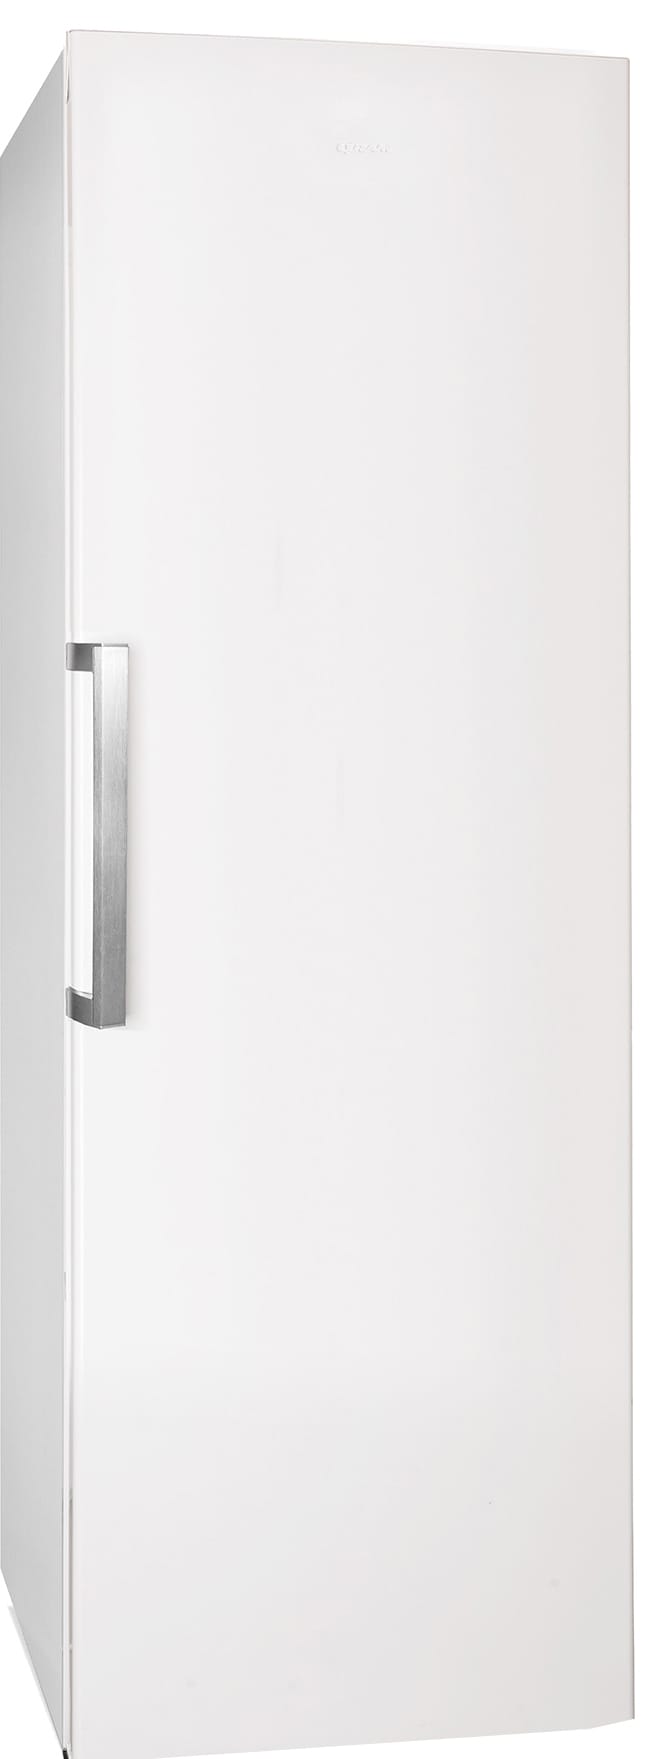 Gram køleskab LC342186